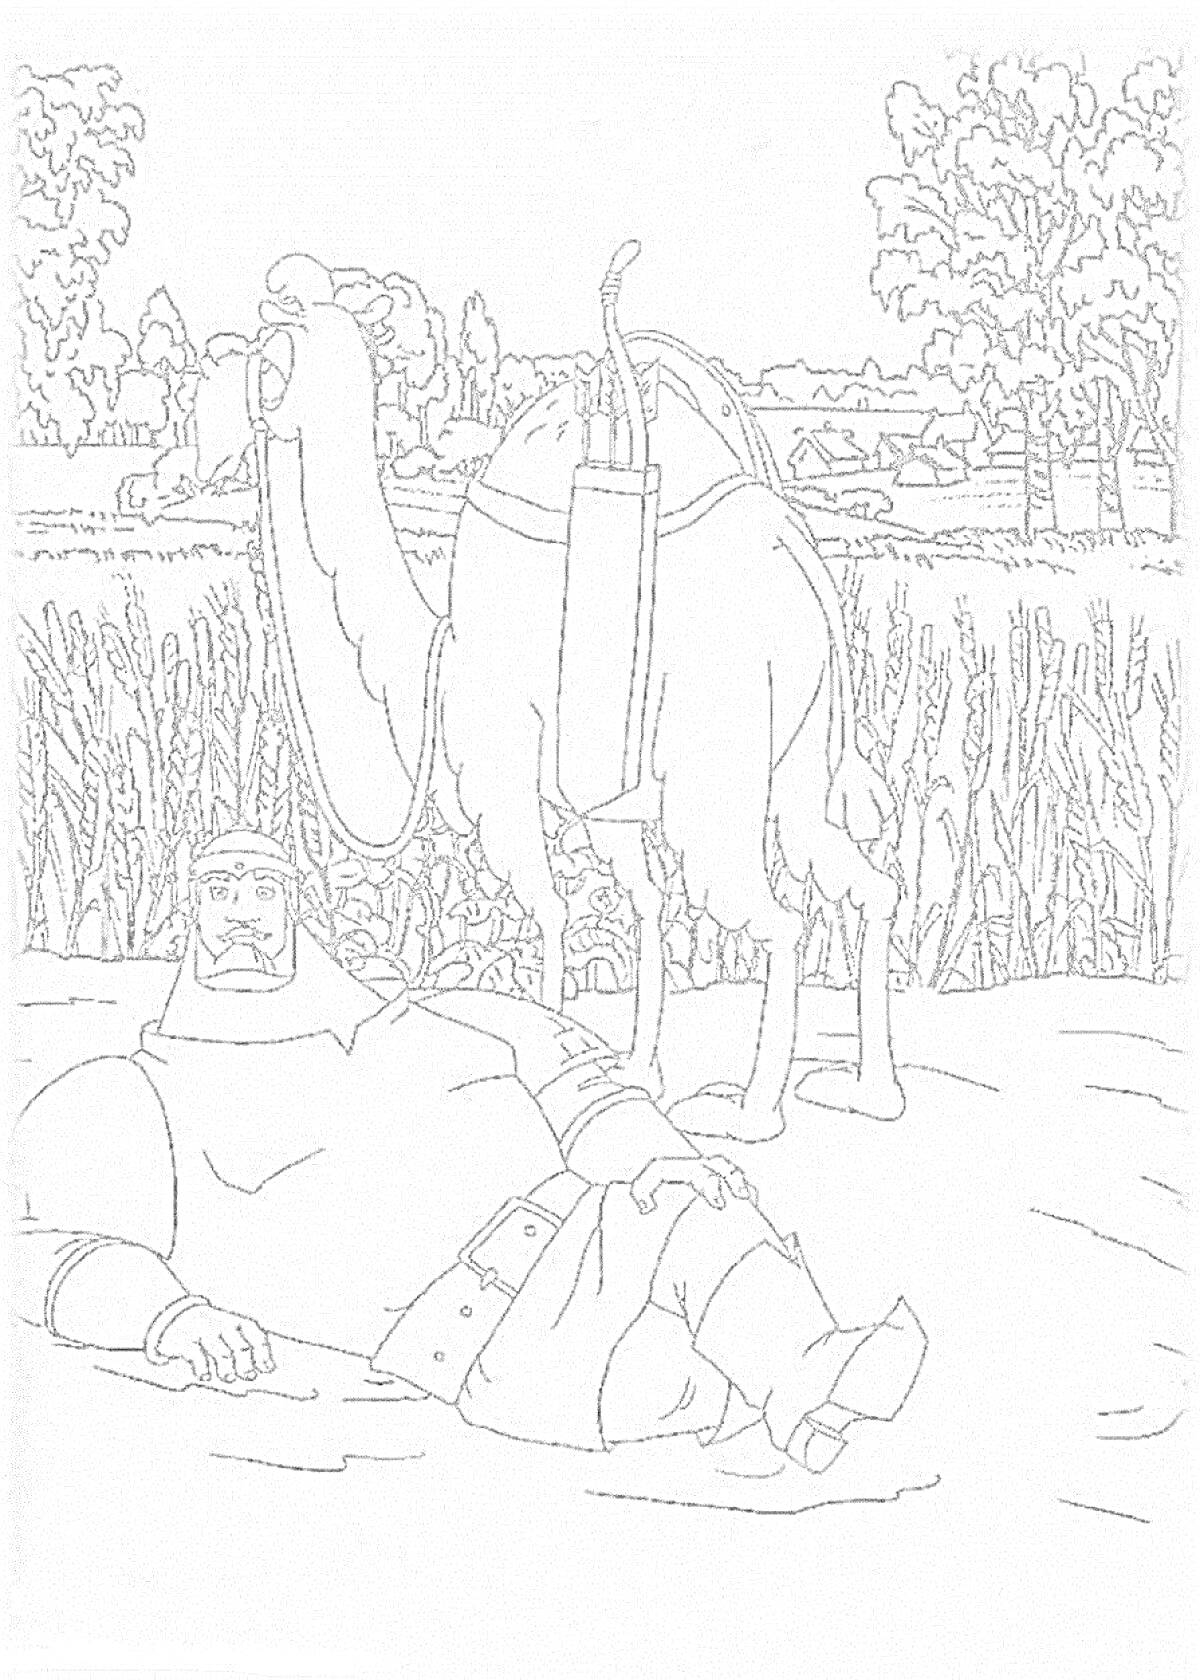 Раскраска Микула Селянинович лежит на земле рядом с верблюдом, на фоне поле и деревья